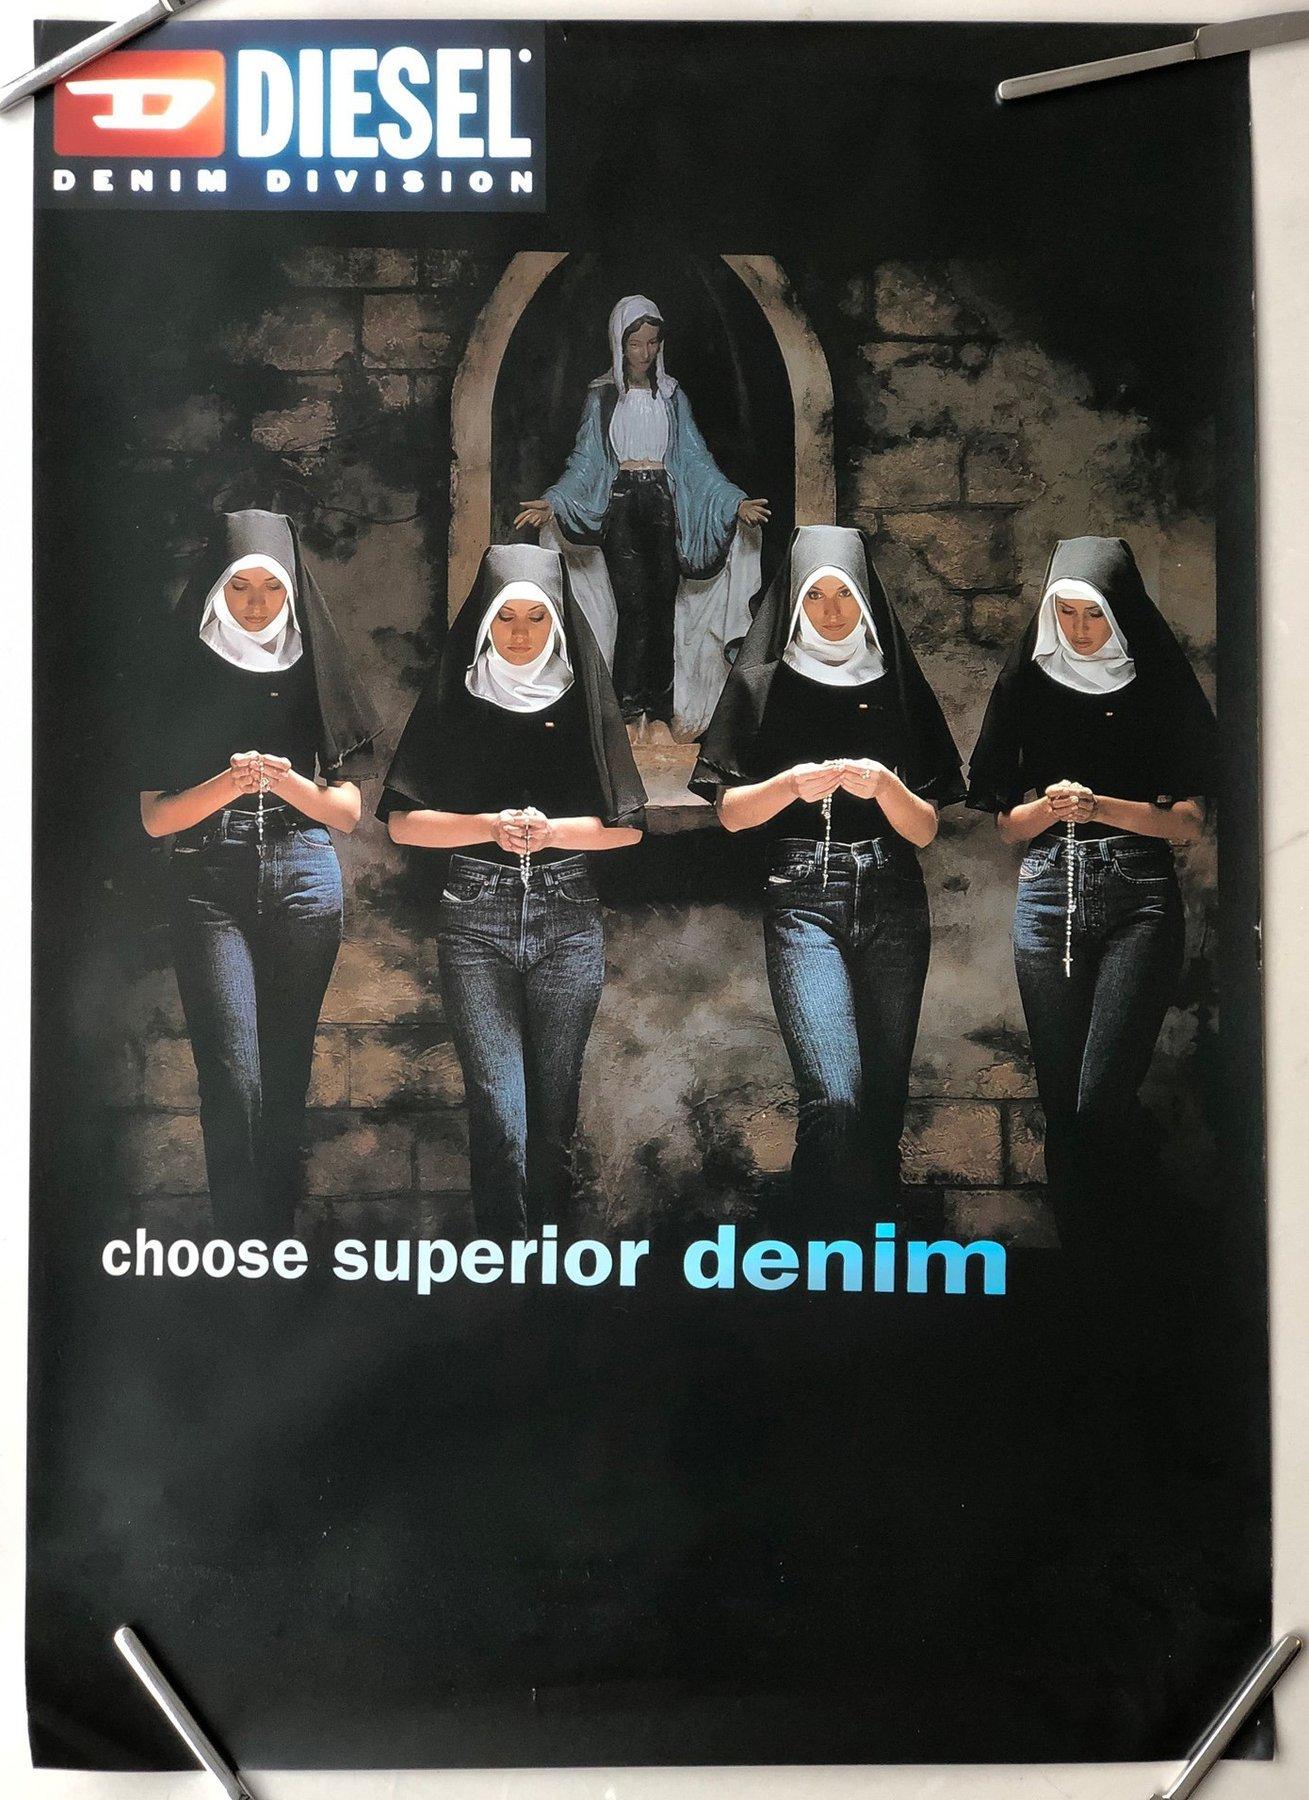 Dutch Erwin Olaf - Fashion Victims - 1998 Diesel (DSL) Dirty Denim - Billboard poster For Sale